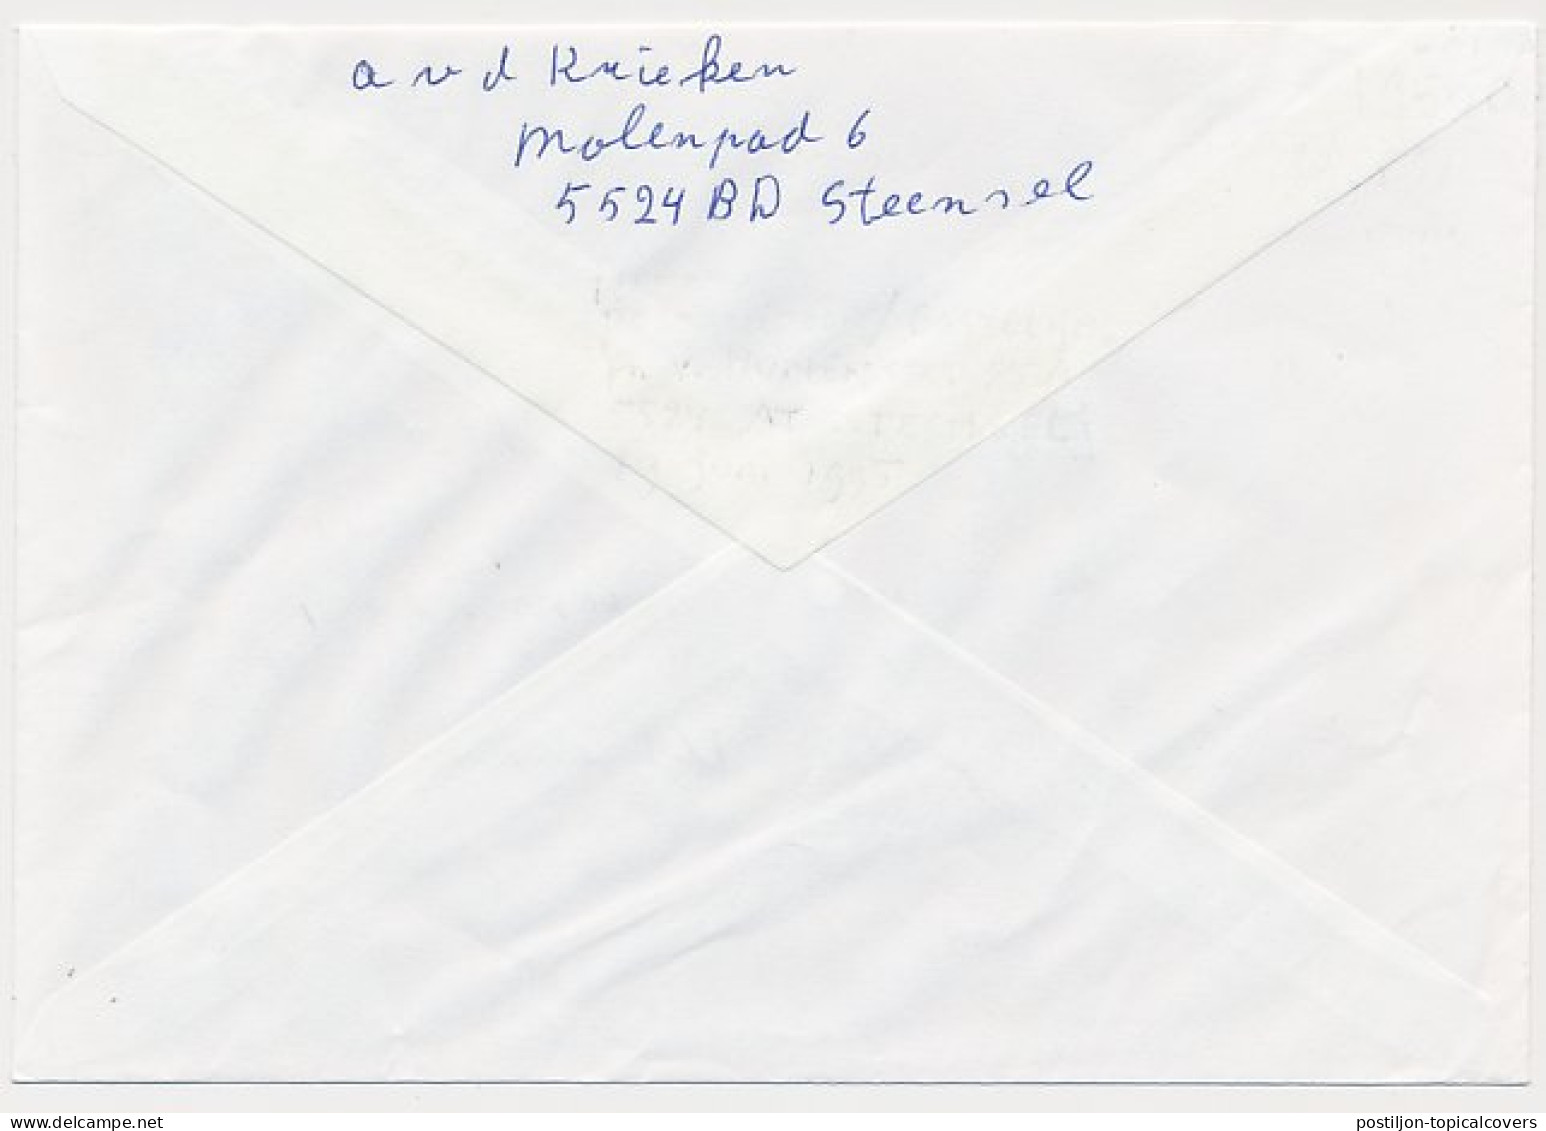 MiPag / Mini Postagentschap Aangetekend Steensel 1995 - Non Classés